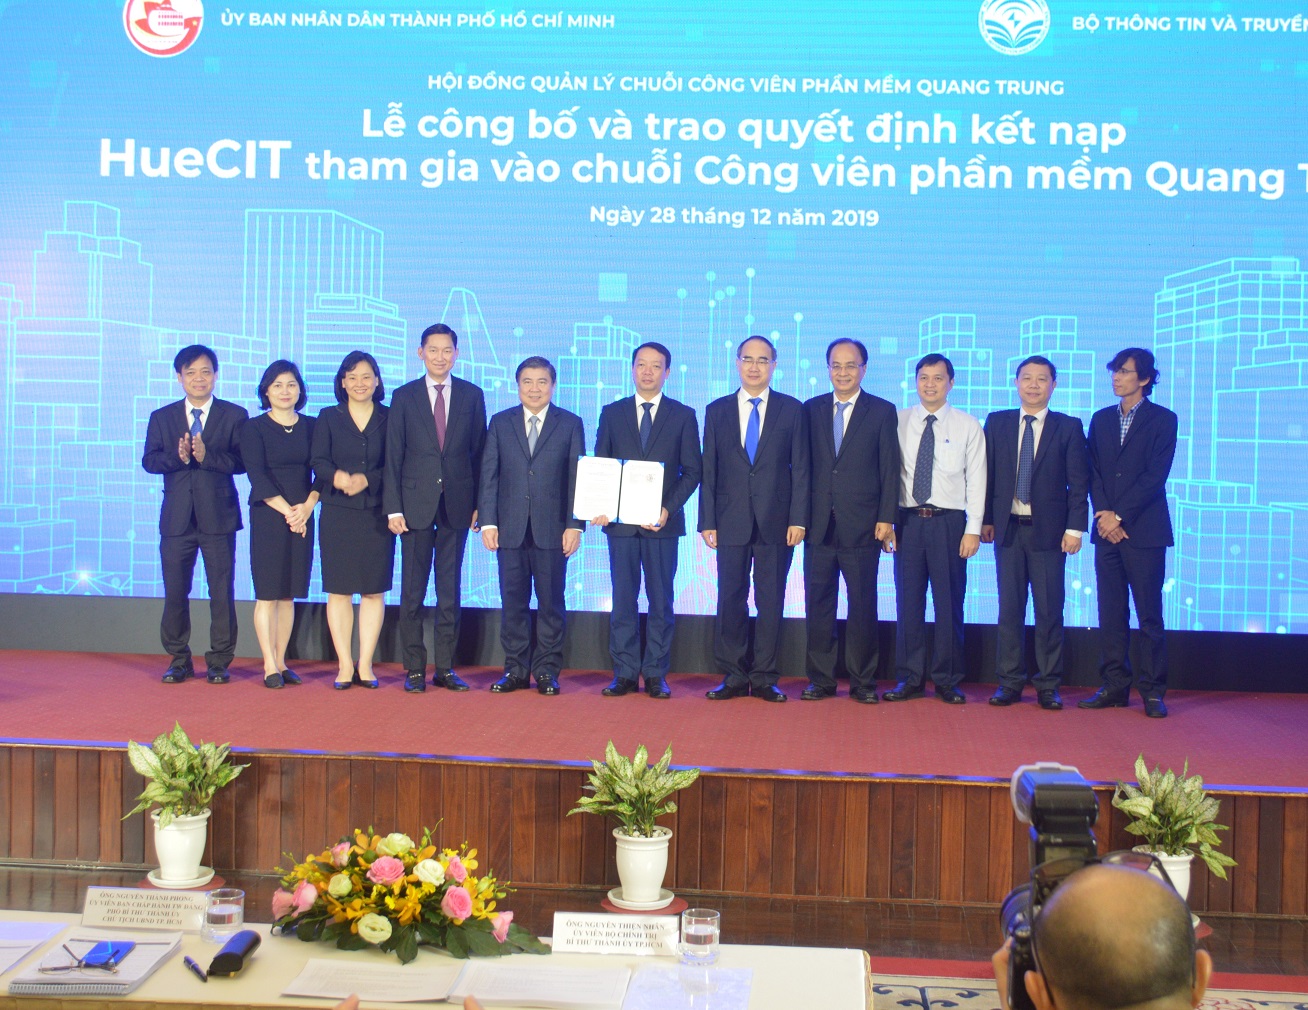 Cũng trong buổi sáng, đã diễn ra lễ công bố và trao quyết định kết nạp HueCIT tham gia vào chuỗi Công viên phần mềm Quang Trung.